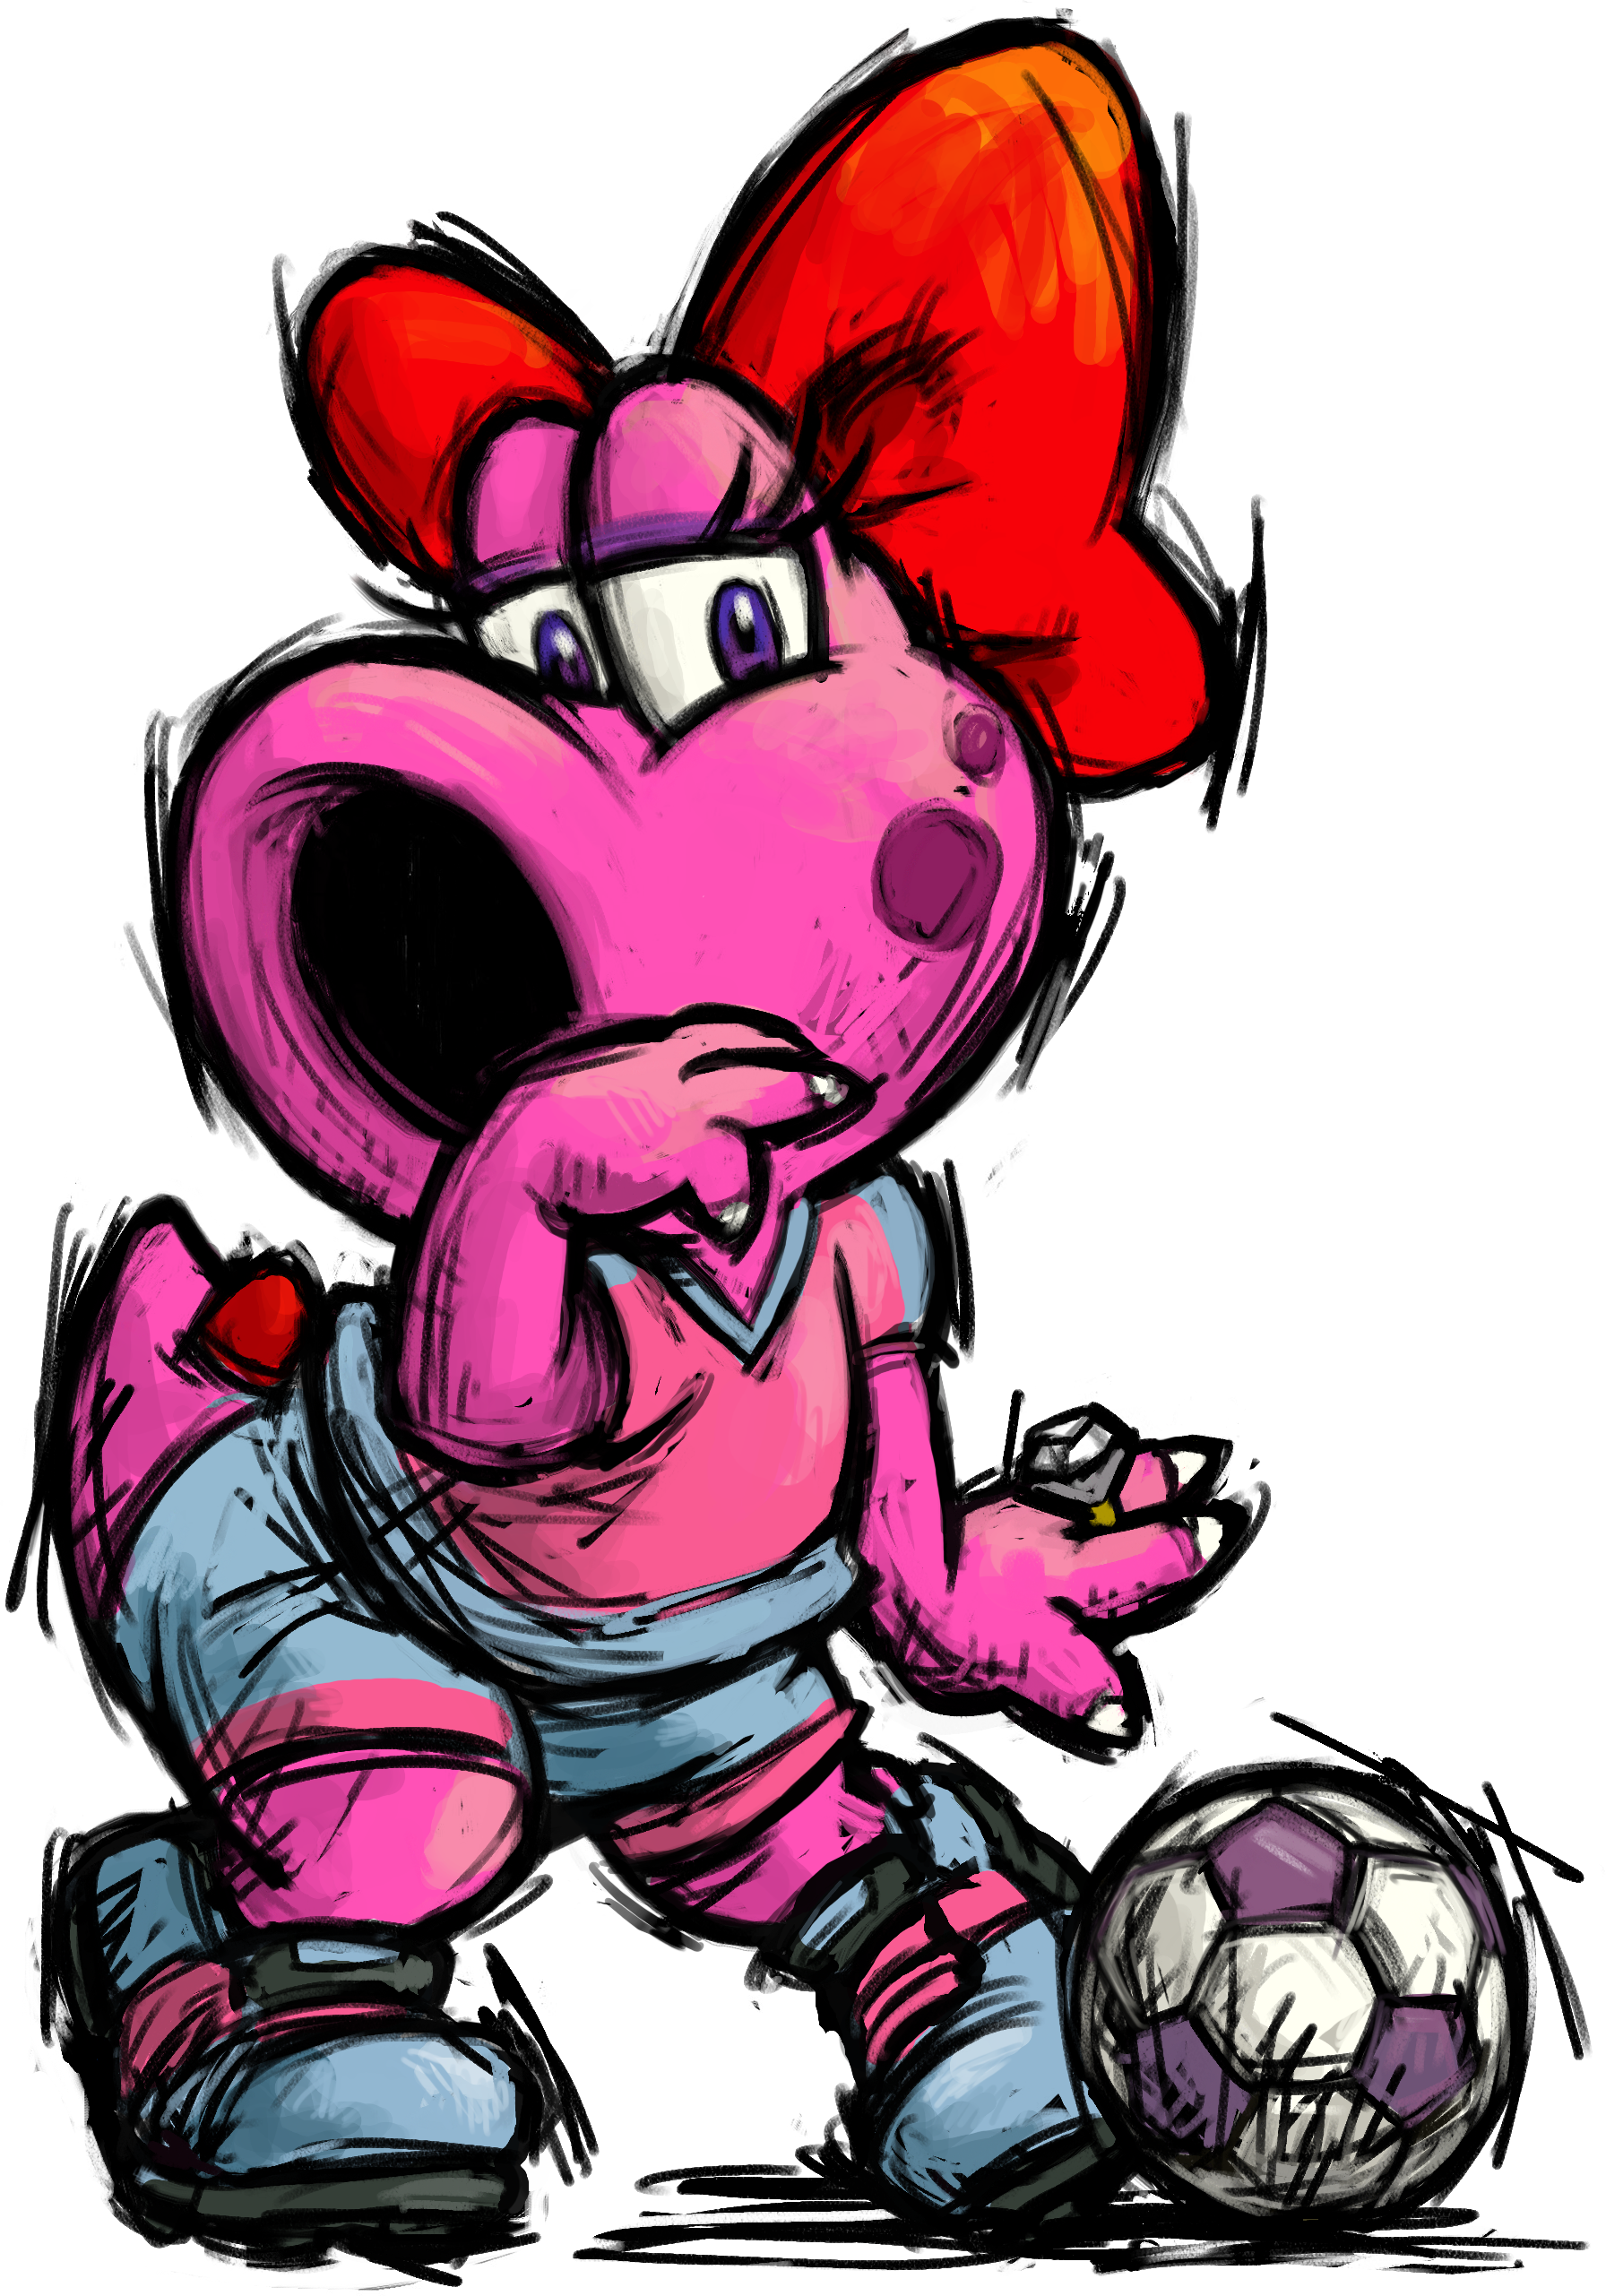 Birdo as depicted in Super Mario Strikers.